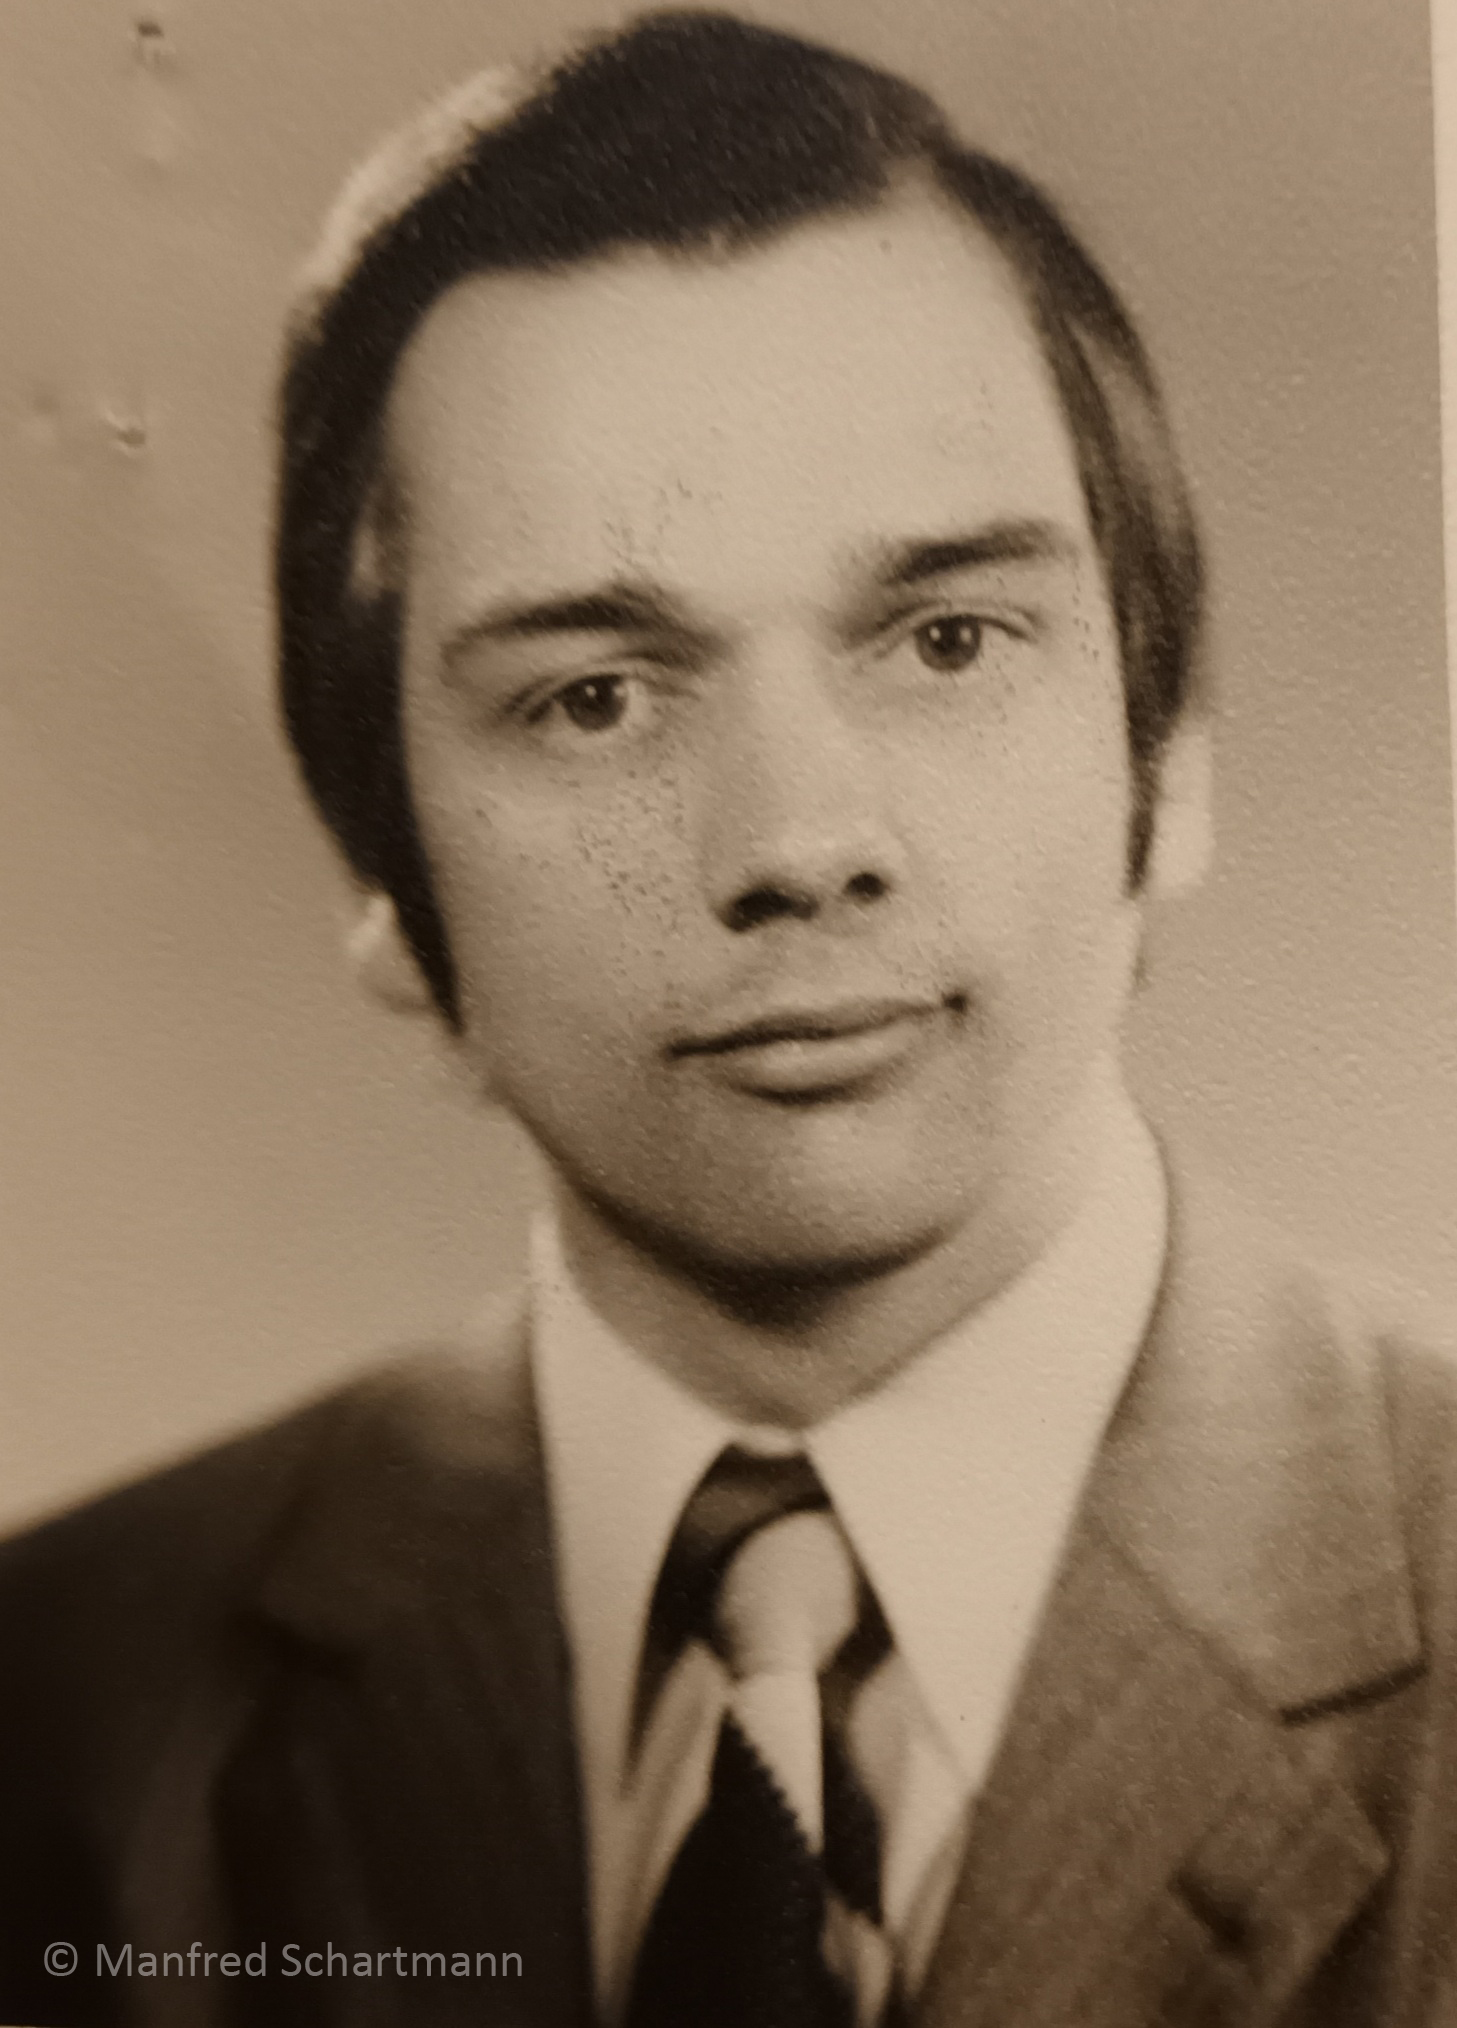 Manfred Schartmann | 1972